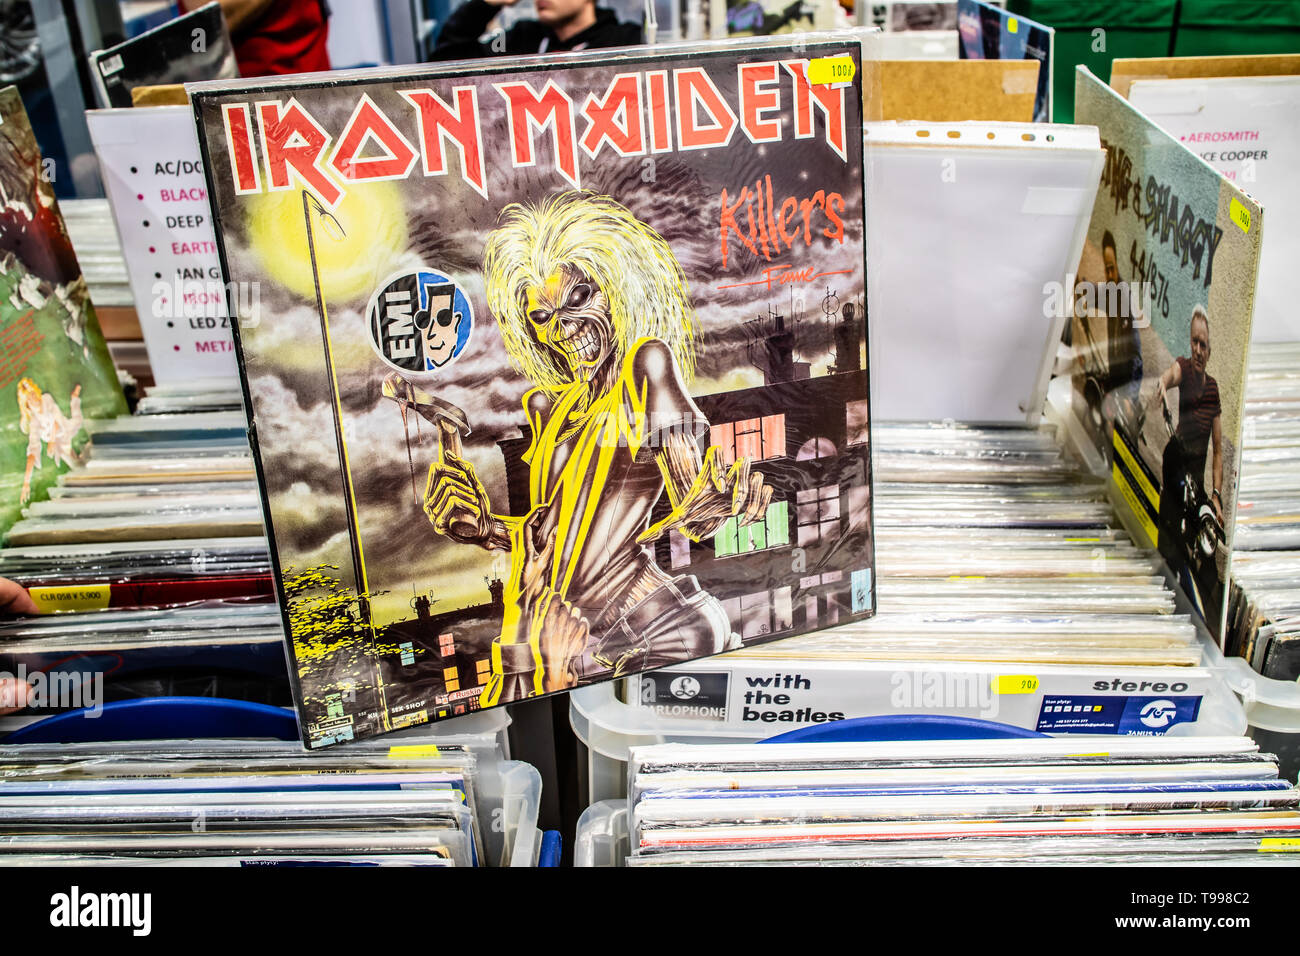 Nadarzyn, Polonia, 11 maggio 2019 Iron Maiden album in vinile sul display per la vendita, vinile, LP, Album rock, inglese heavy metal band, collezione di vinili Foto Stock